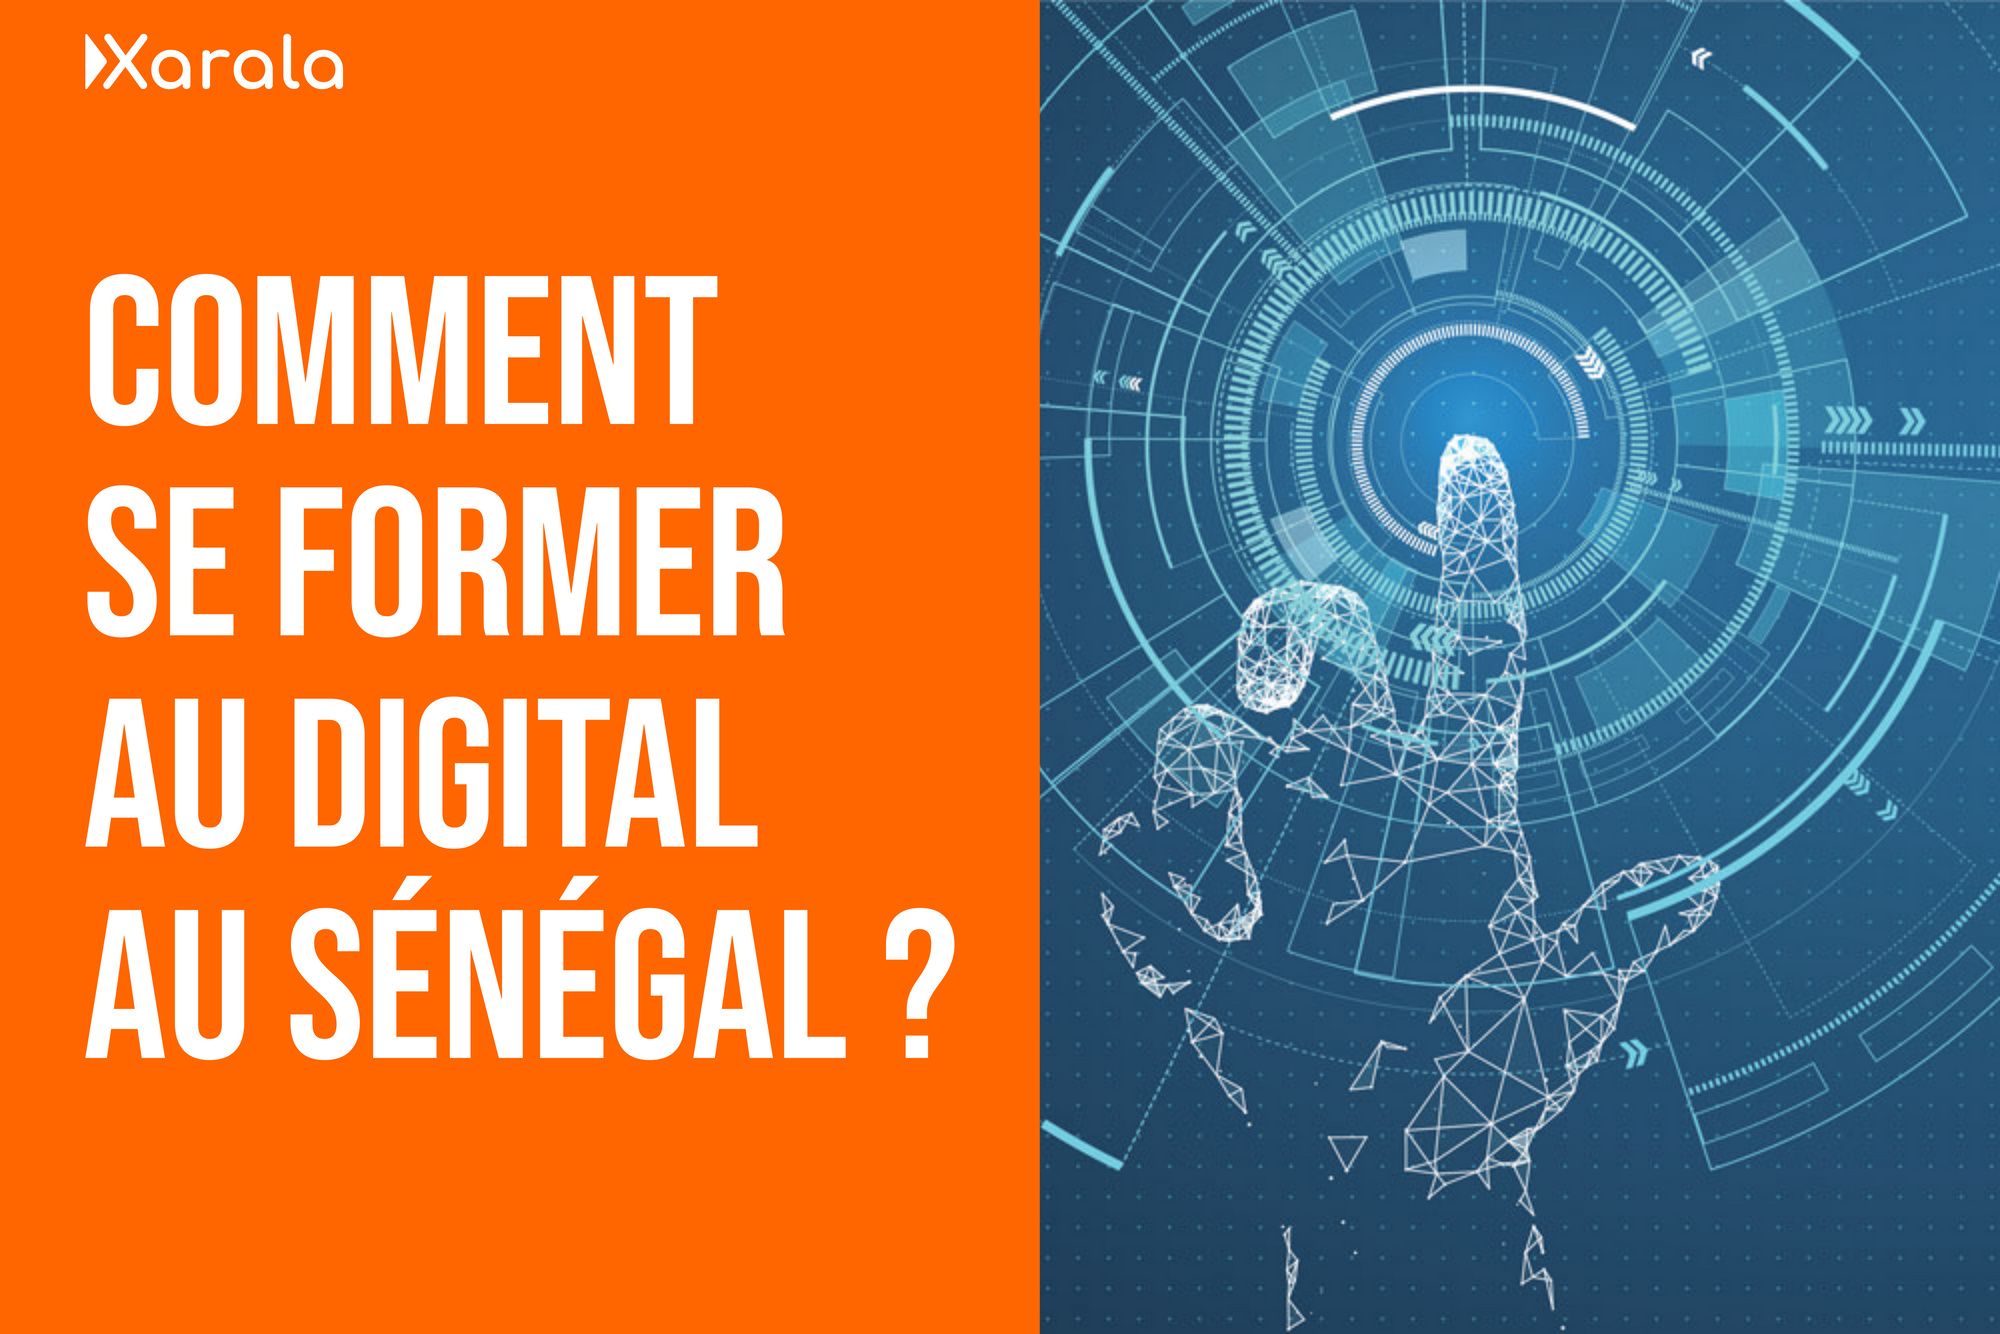 Comment se former au digital au Sénégal ?